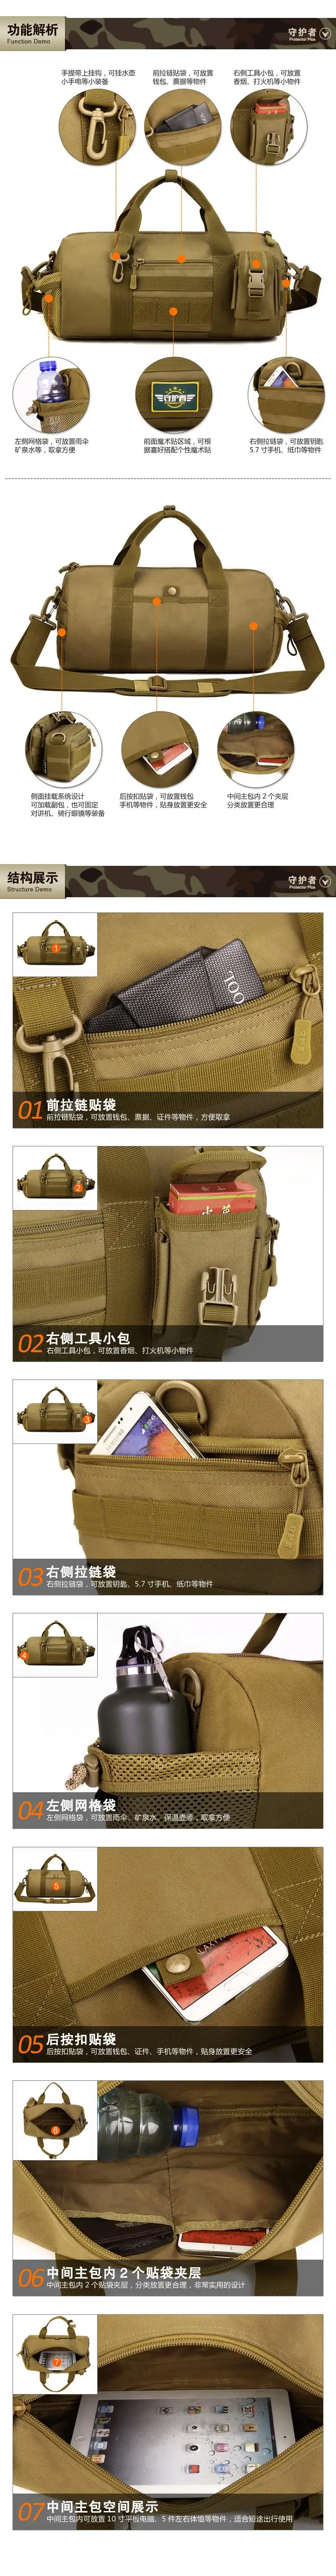 Военная качественная 1000D нейлоновая водонепроницаемая сумка-мессенджер в форме ведра большая сумка дорожная сумка A3113